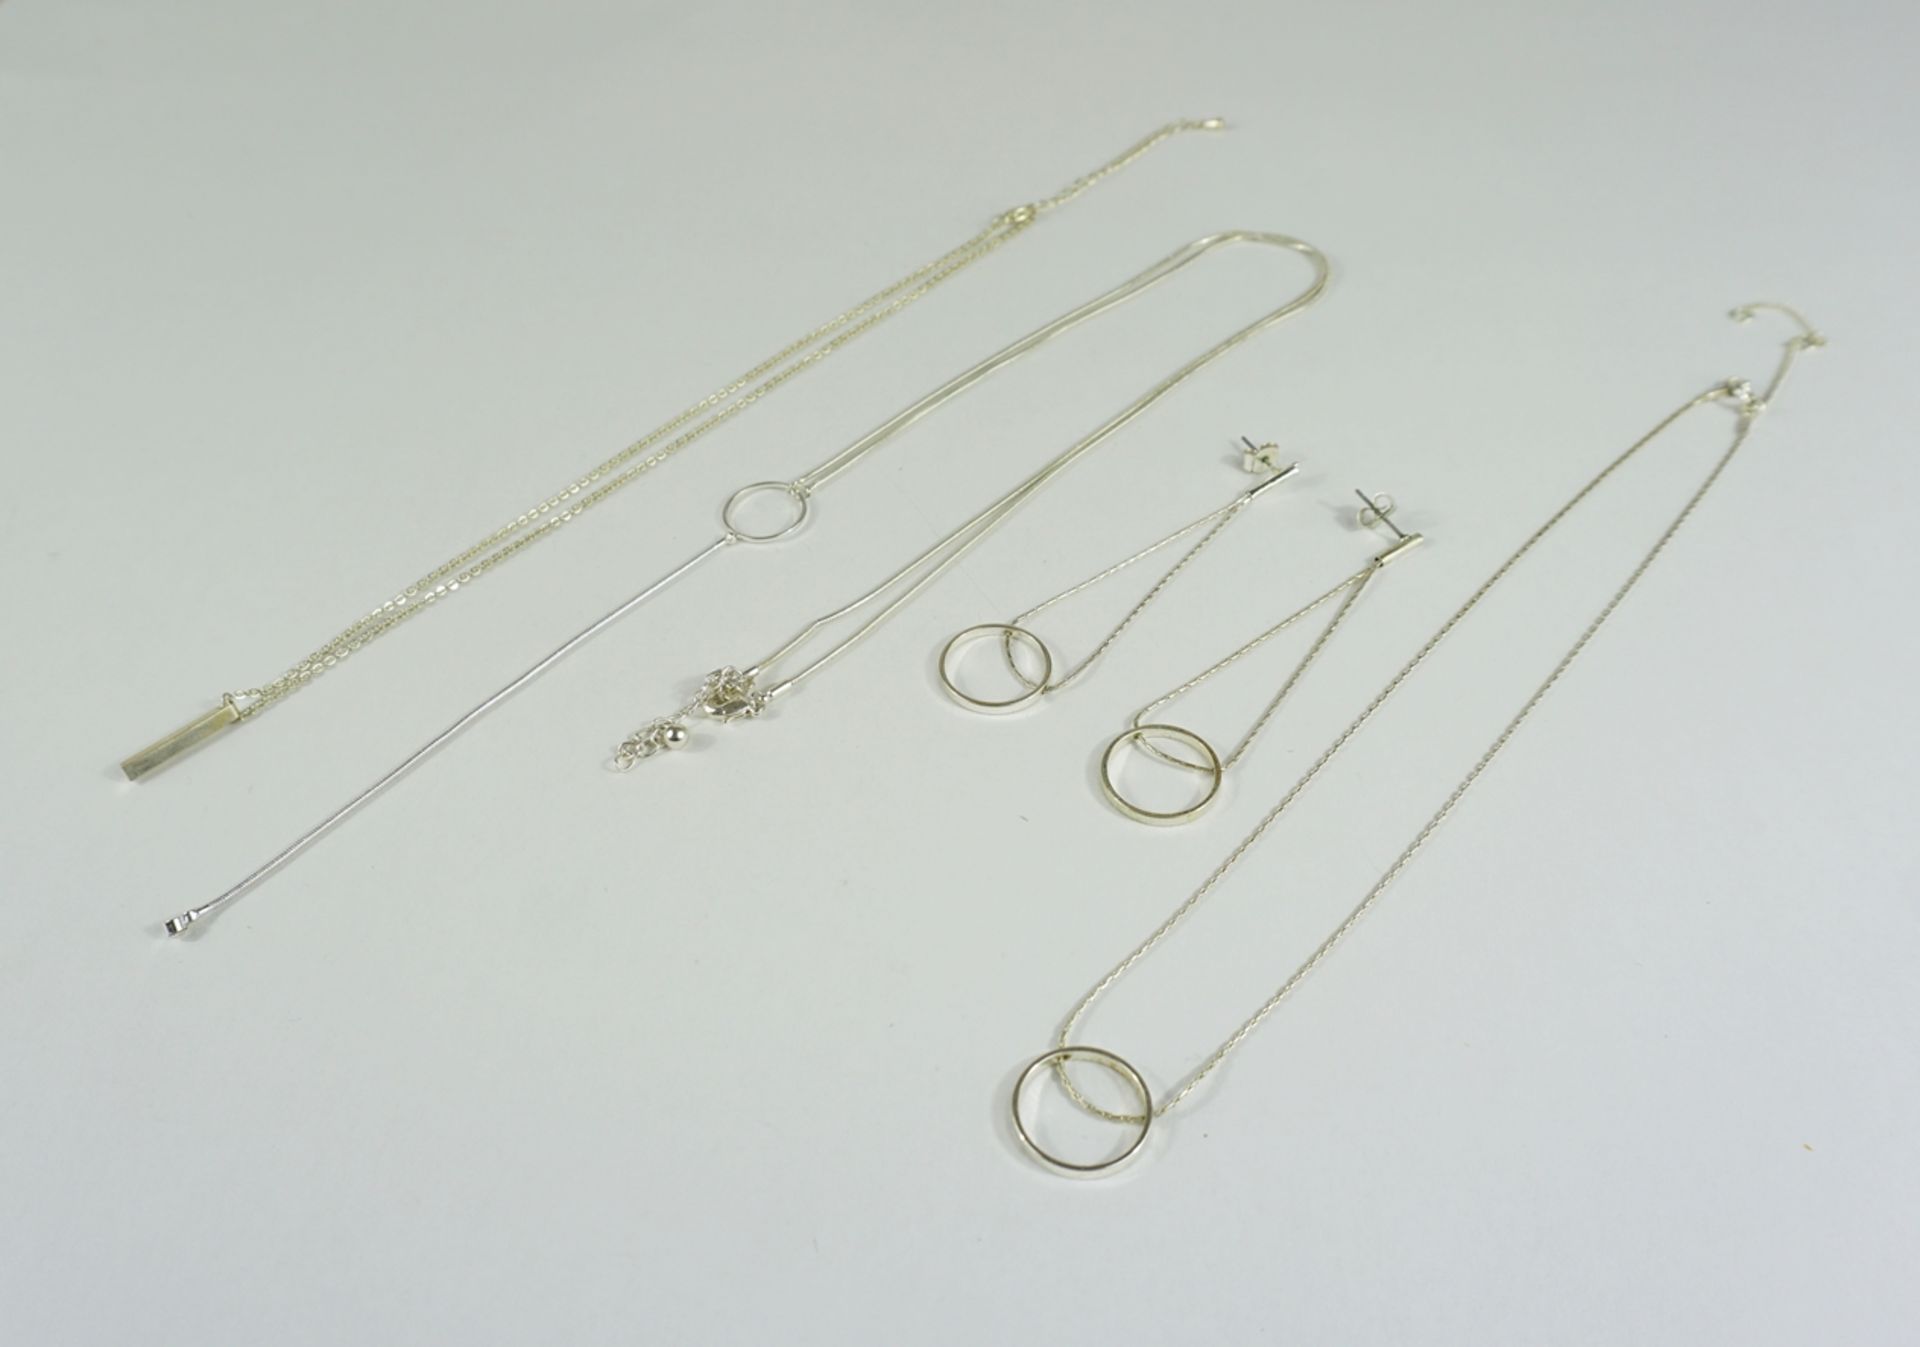 Kette mit Stabanhänger, 2 Colliers und 1 Paar Ohrringe, versilbert - Image 2 of 5